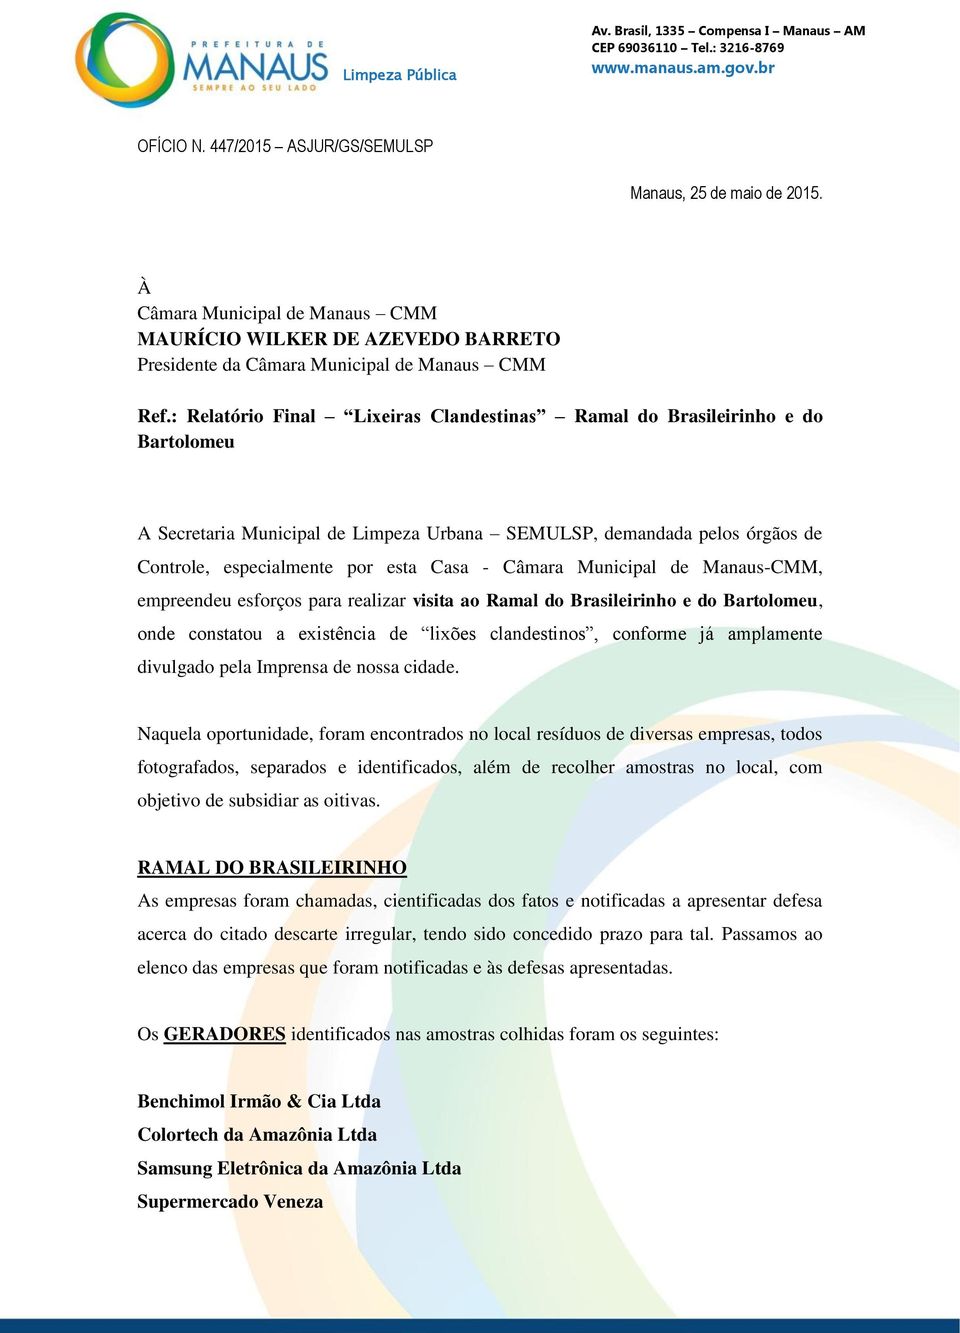 Câmara Municipal de Manaus-CMM, empreendeu esforços para realizar visita ao Ramal do Brasileirinho e do Bartolomeu, onde constatou a existência de lixões clandestinos, conforme já amplamente